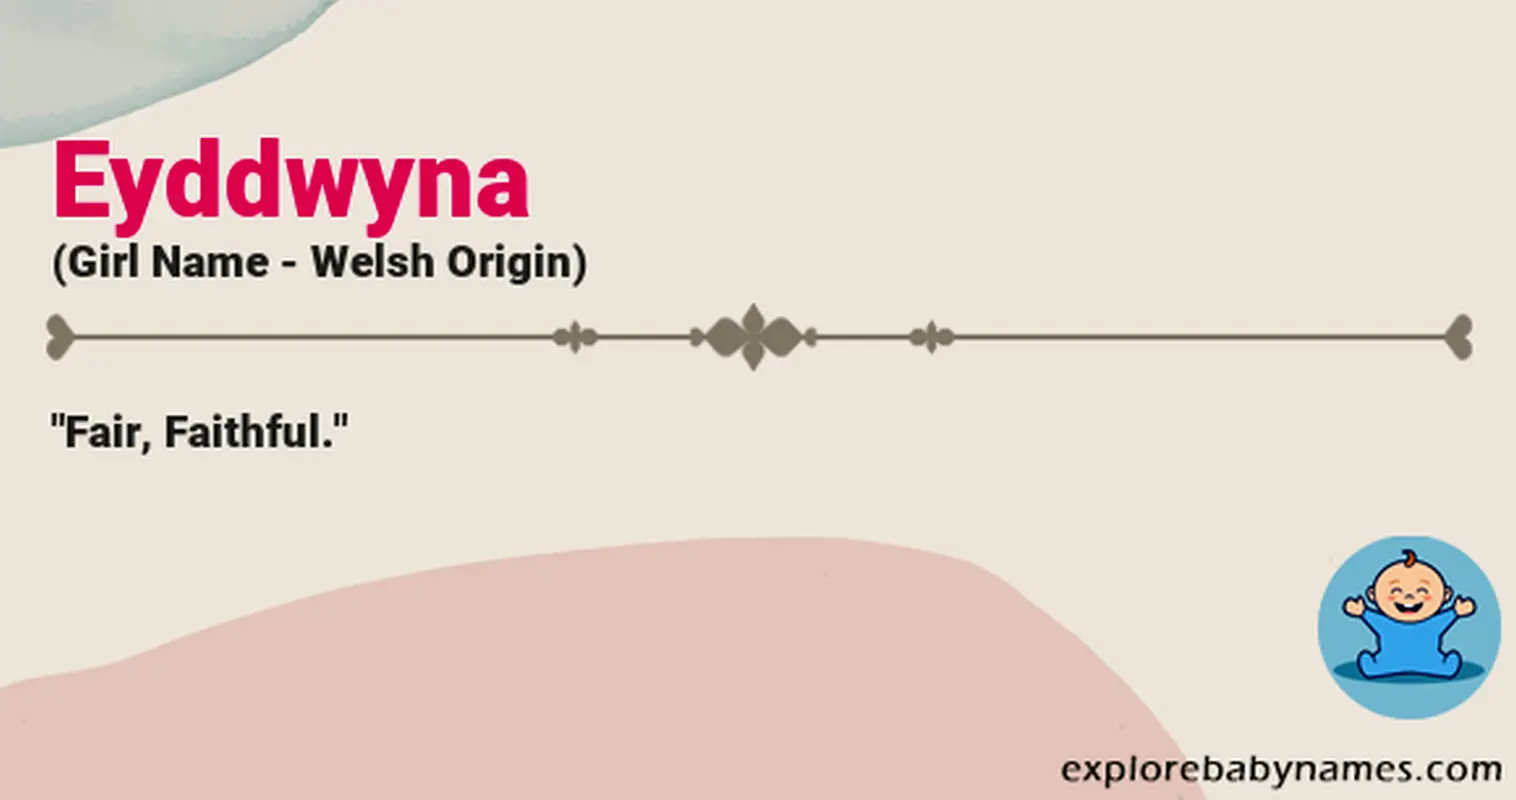 Meaning of Eyddwyna